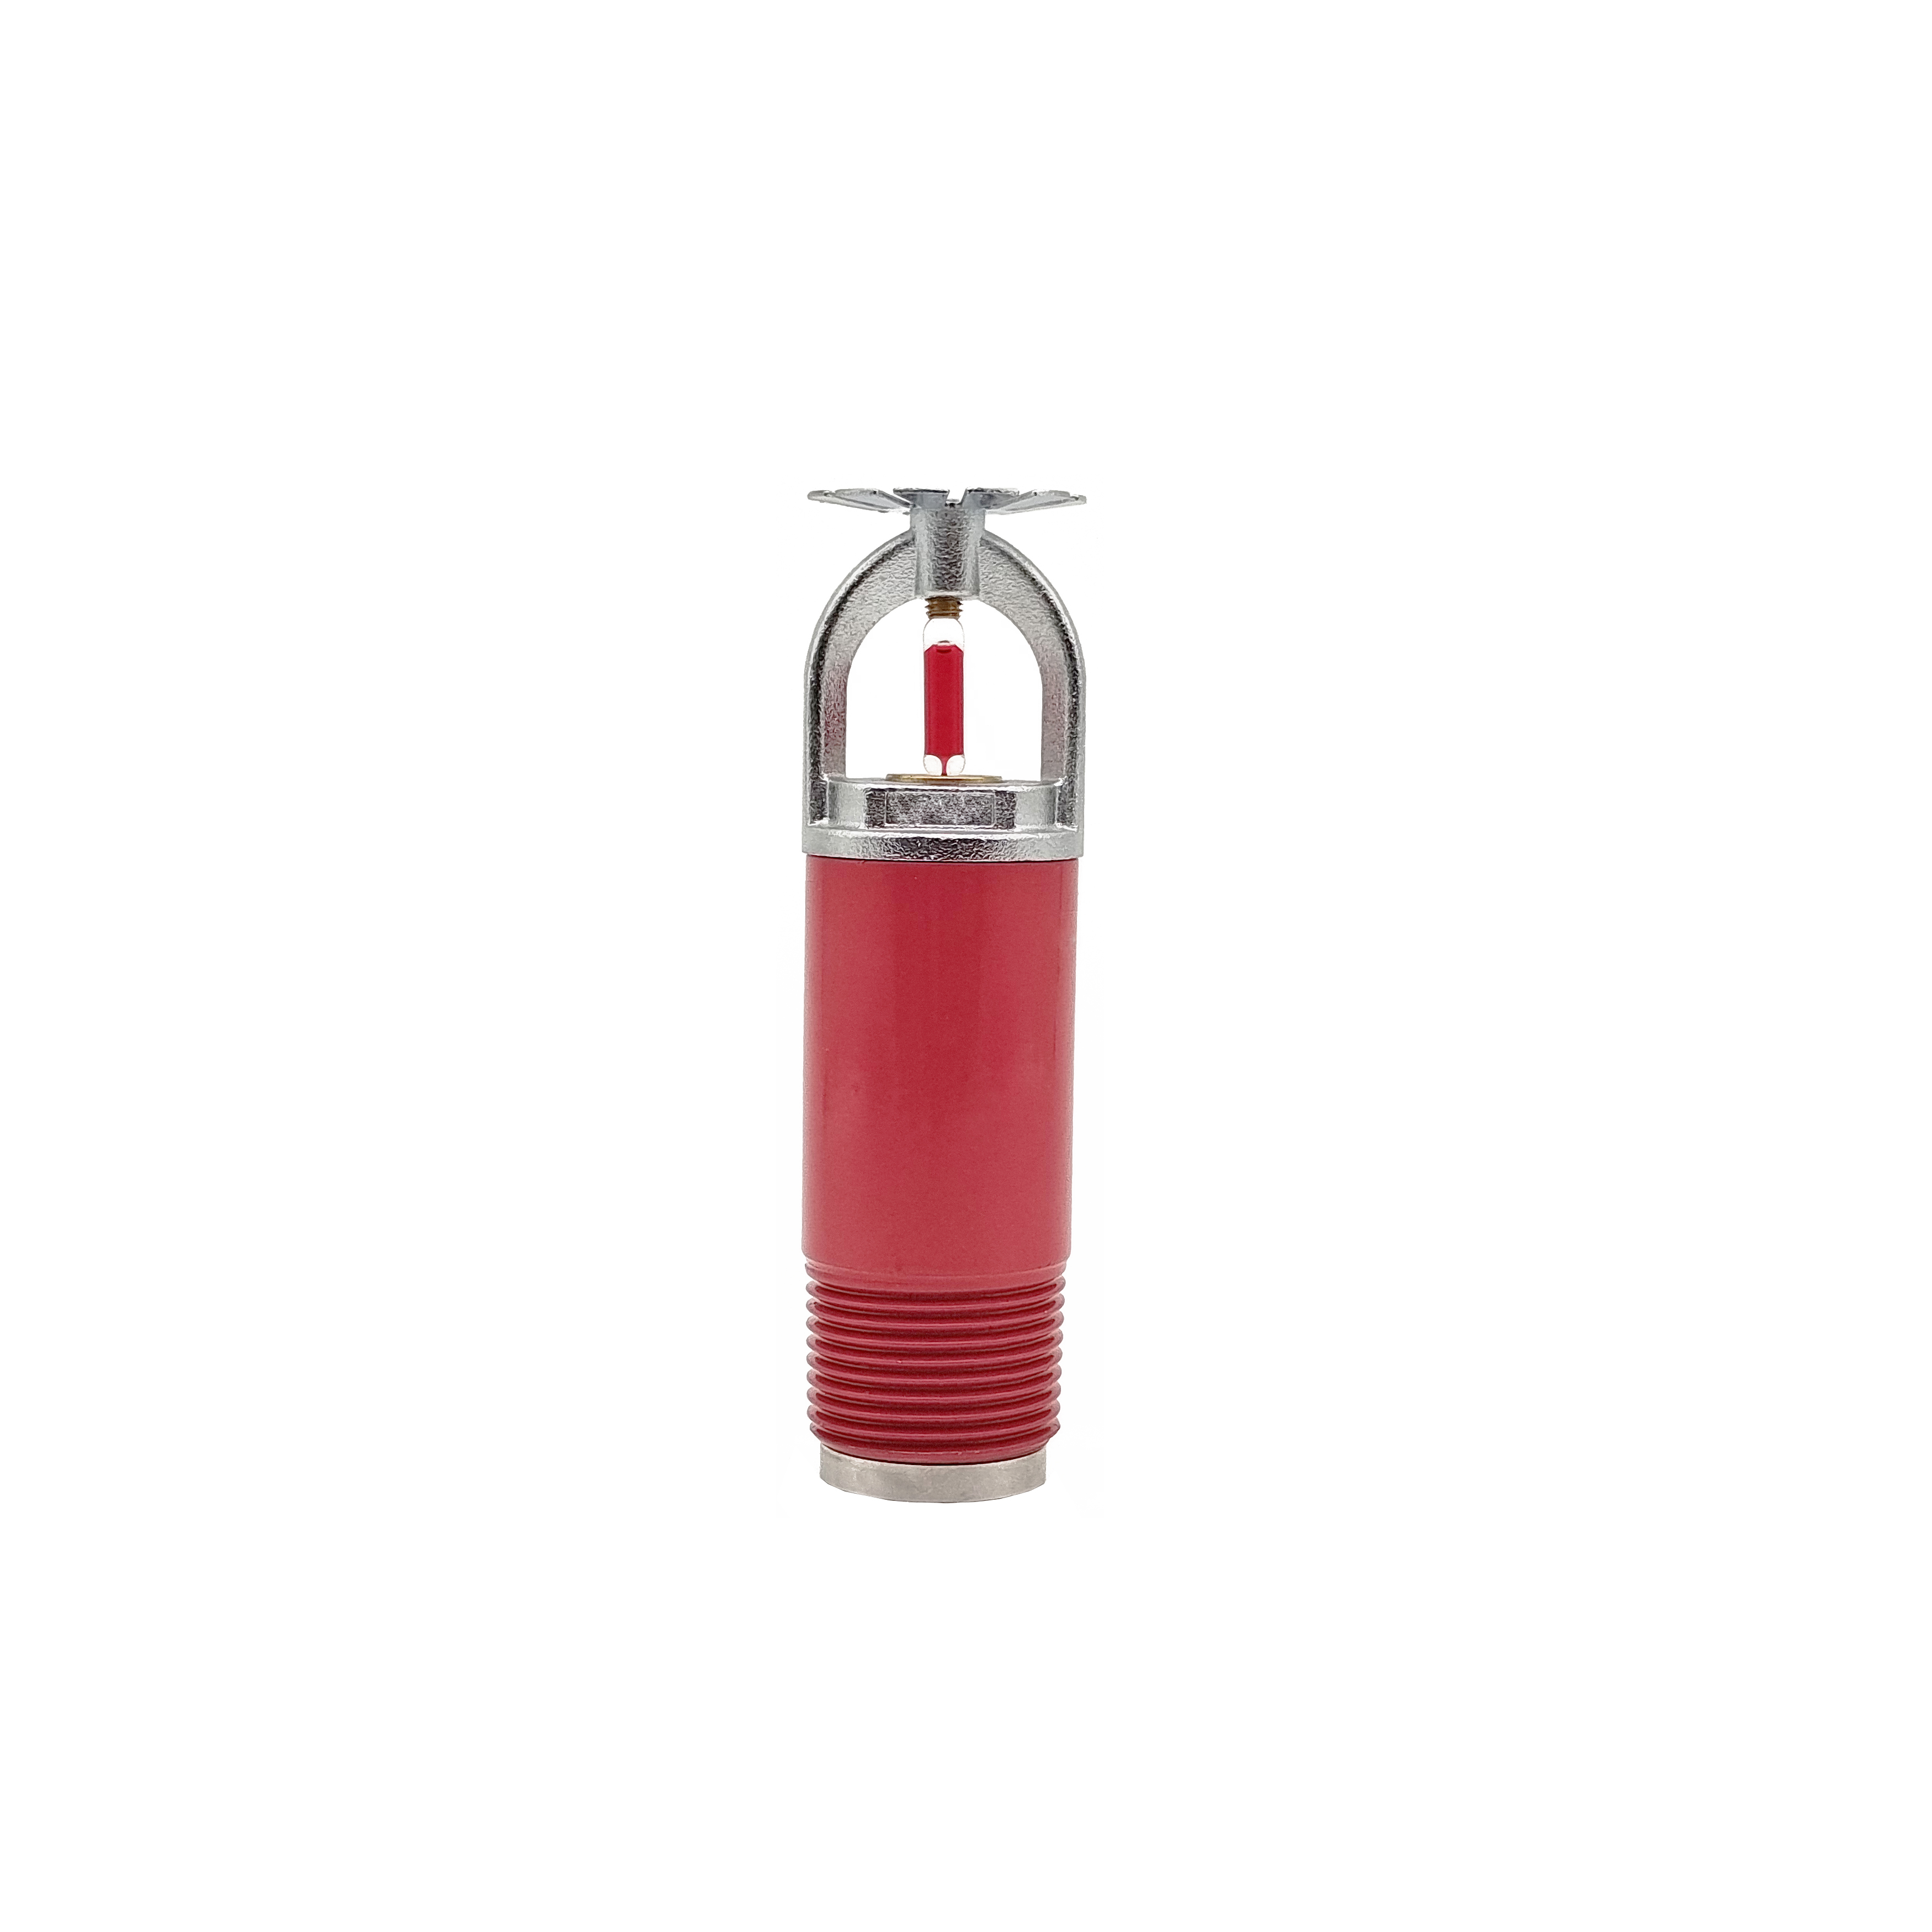 Sprinkler pendente seco personalizado Fornecido diretamente pelo fabricante do sprinkler contra incêndio